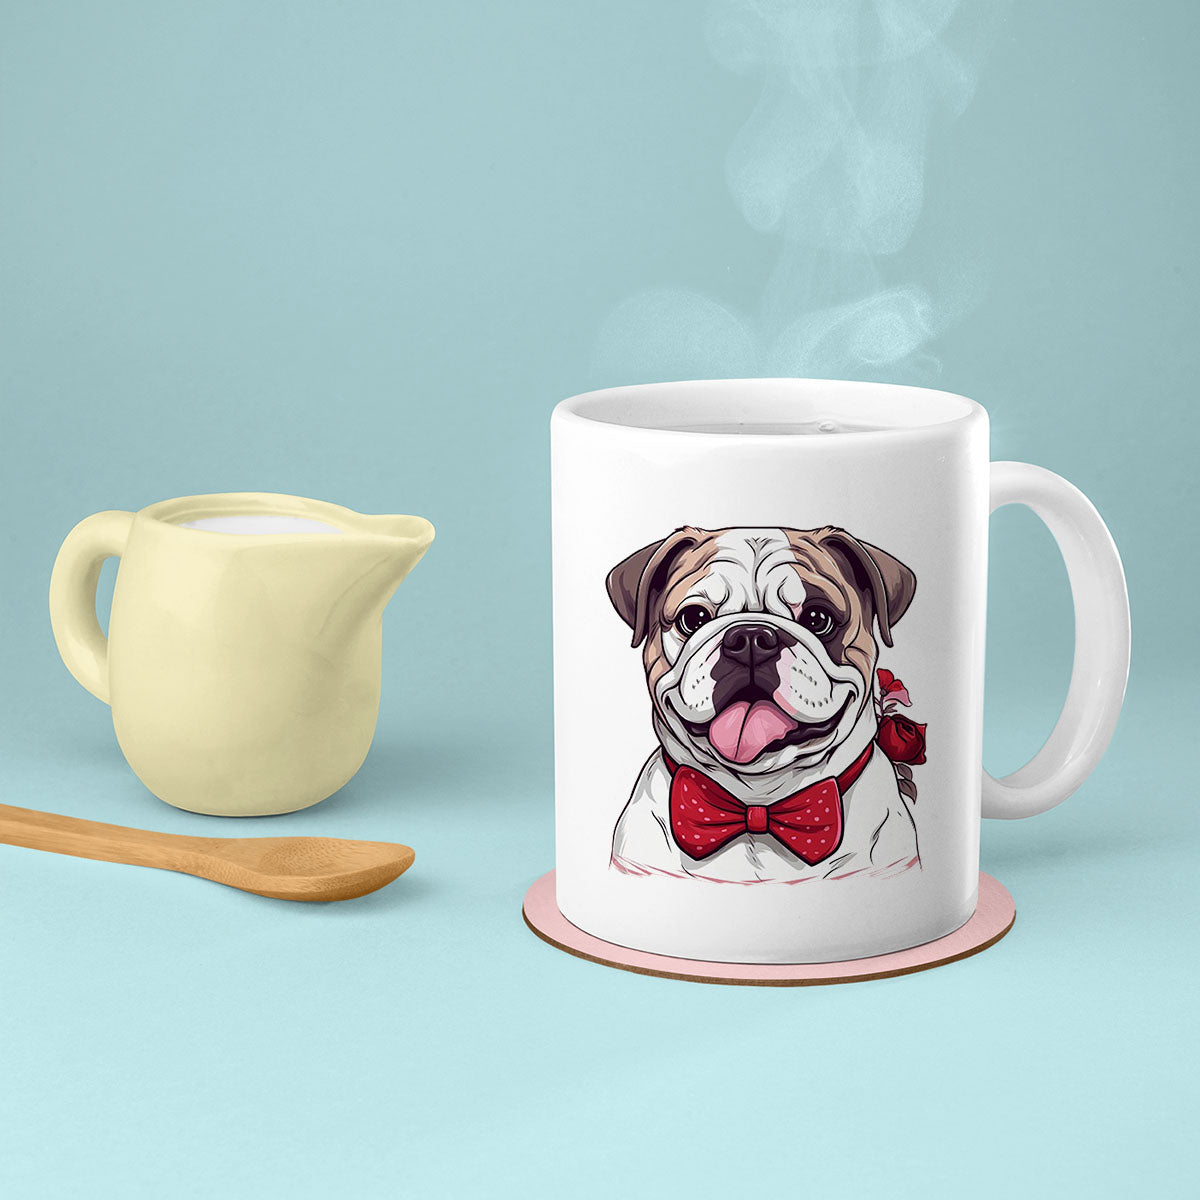 Custom Valentine's Day Dog Mug, Personalized Valentine's Day Gift for Dog Lover, Cute Bulldog Love Ceramic Mug, Dog Coffee Mugs, Personalized Pet Mugs, Cute Valentine Puppy Heart Ceramic Mug, Valentines Gift